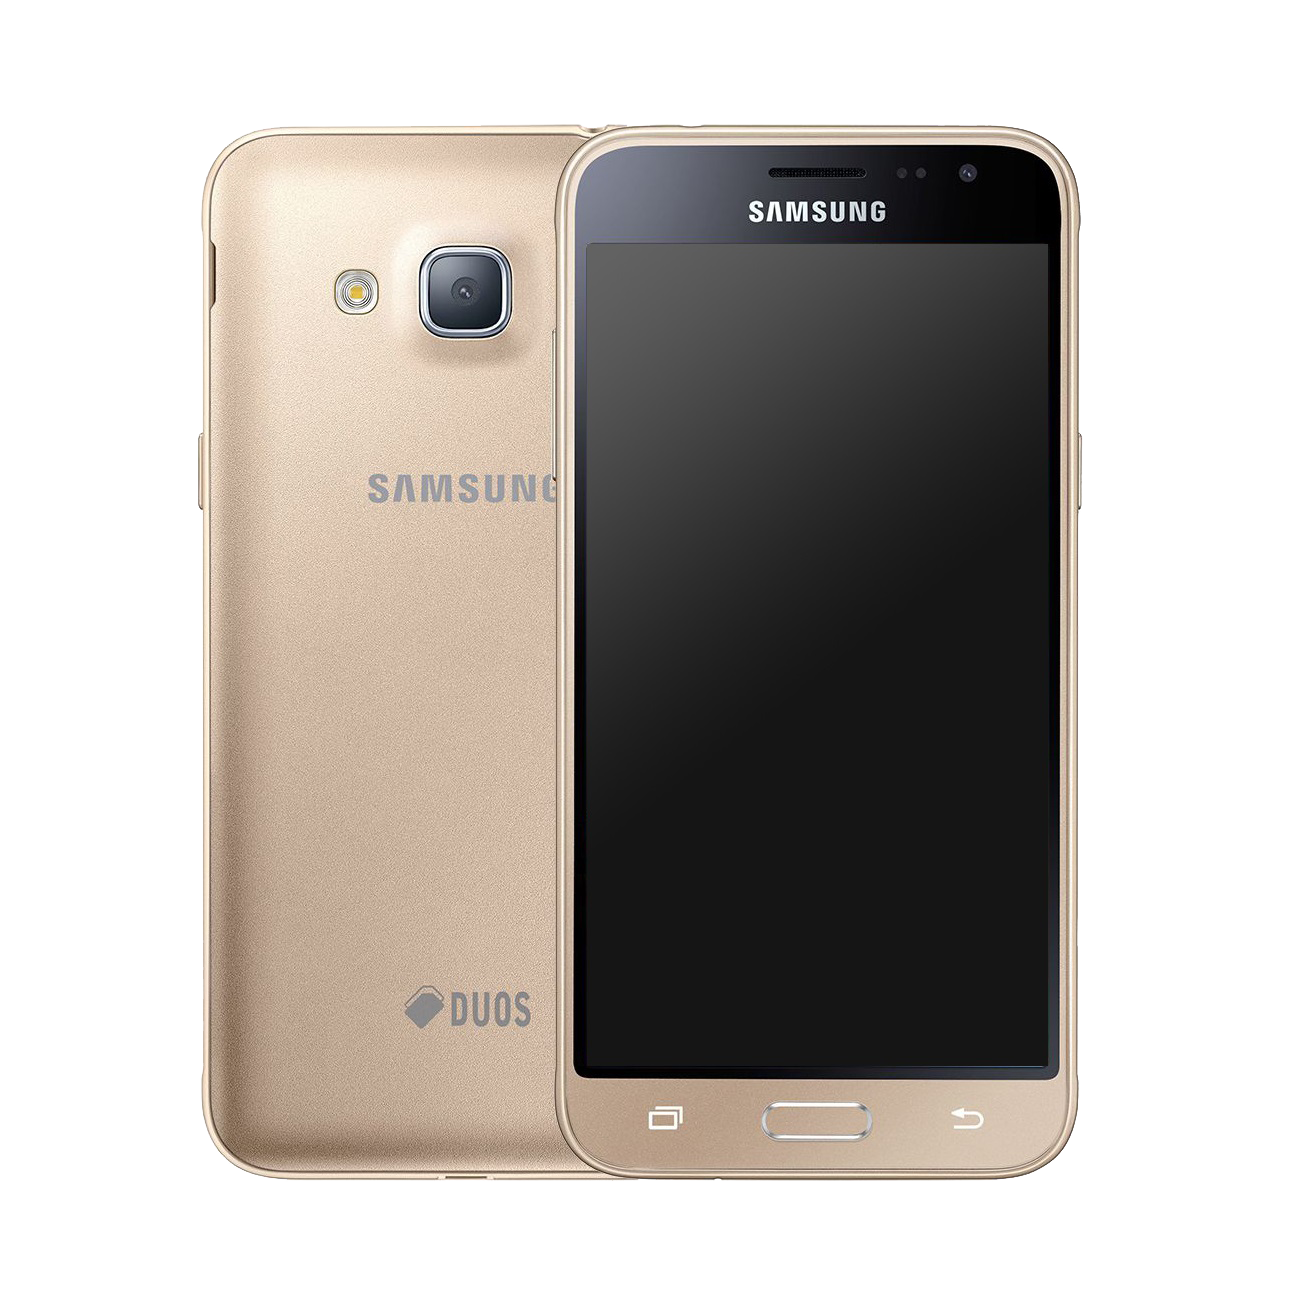 Samsung Galaxy J3 (2016) Dual-SIM gold - Ohne Vertrag